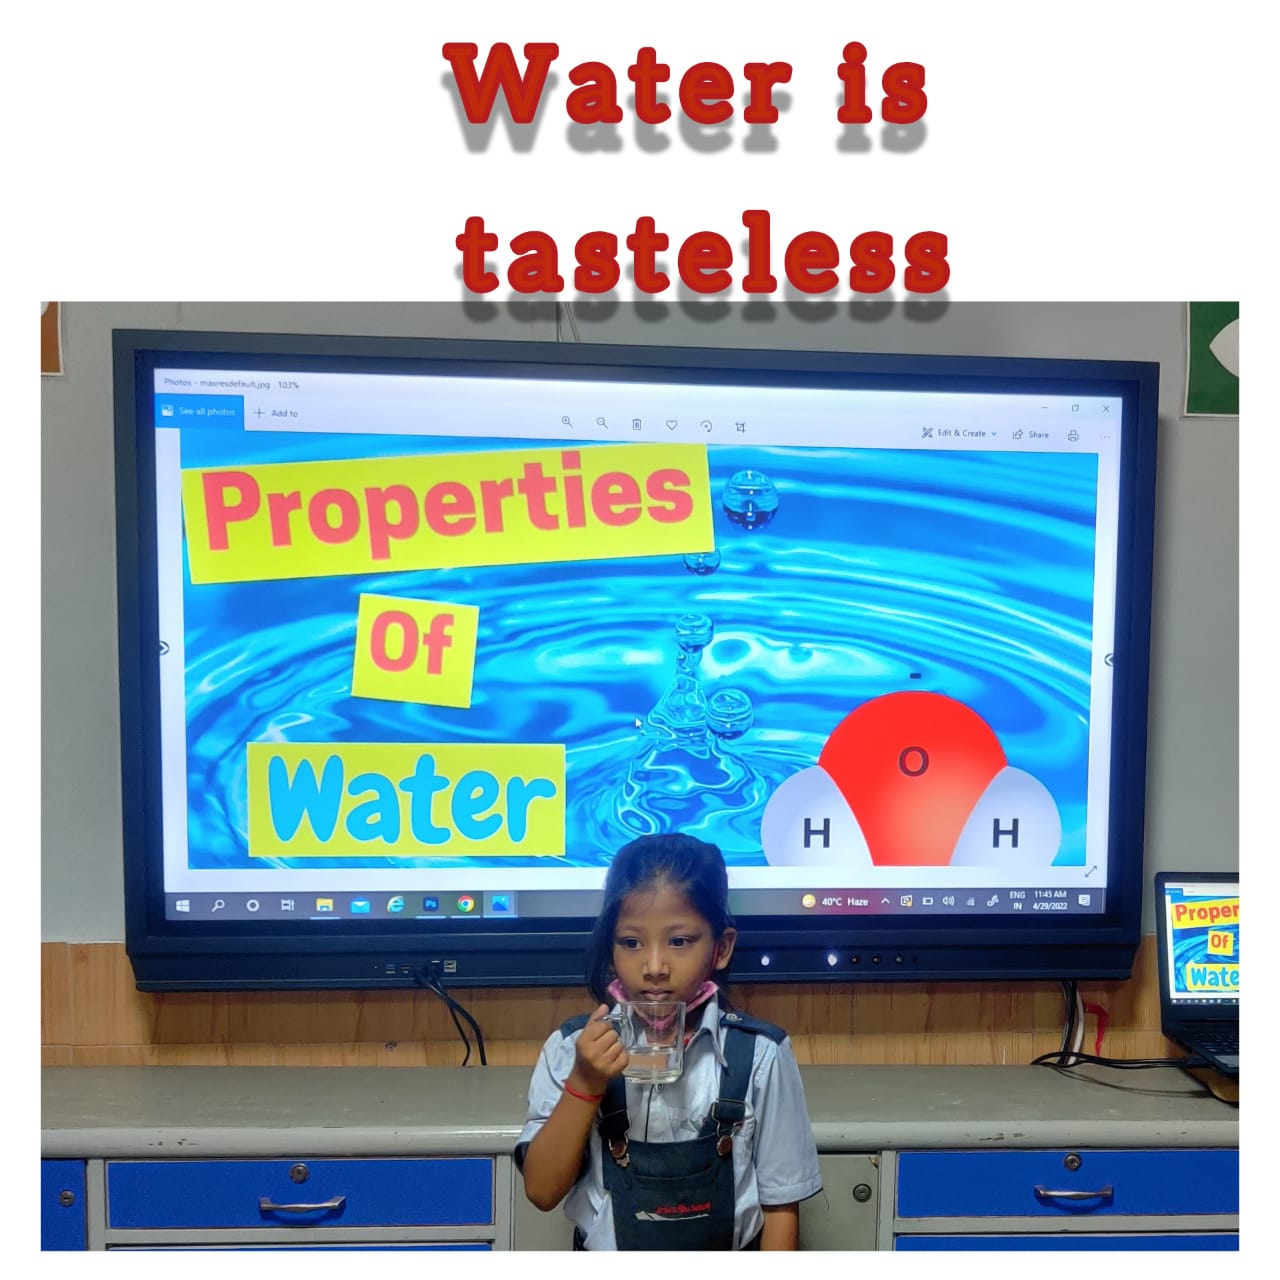 PROPERTIES OF WATER